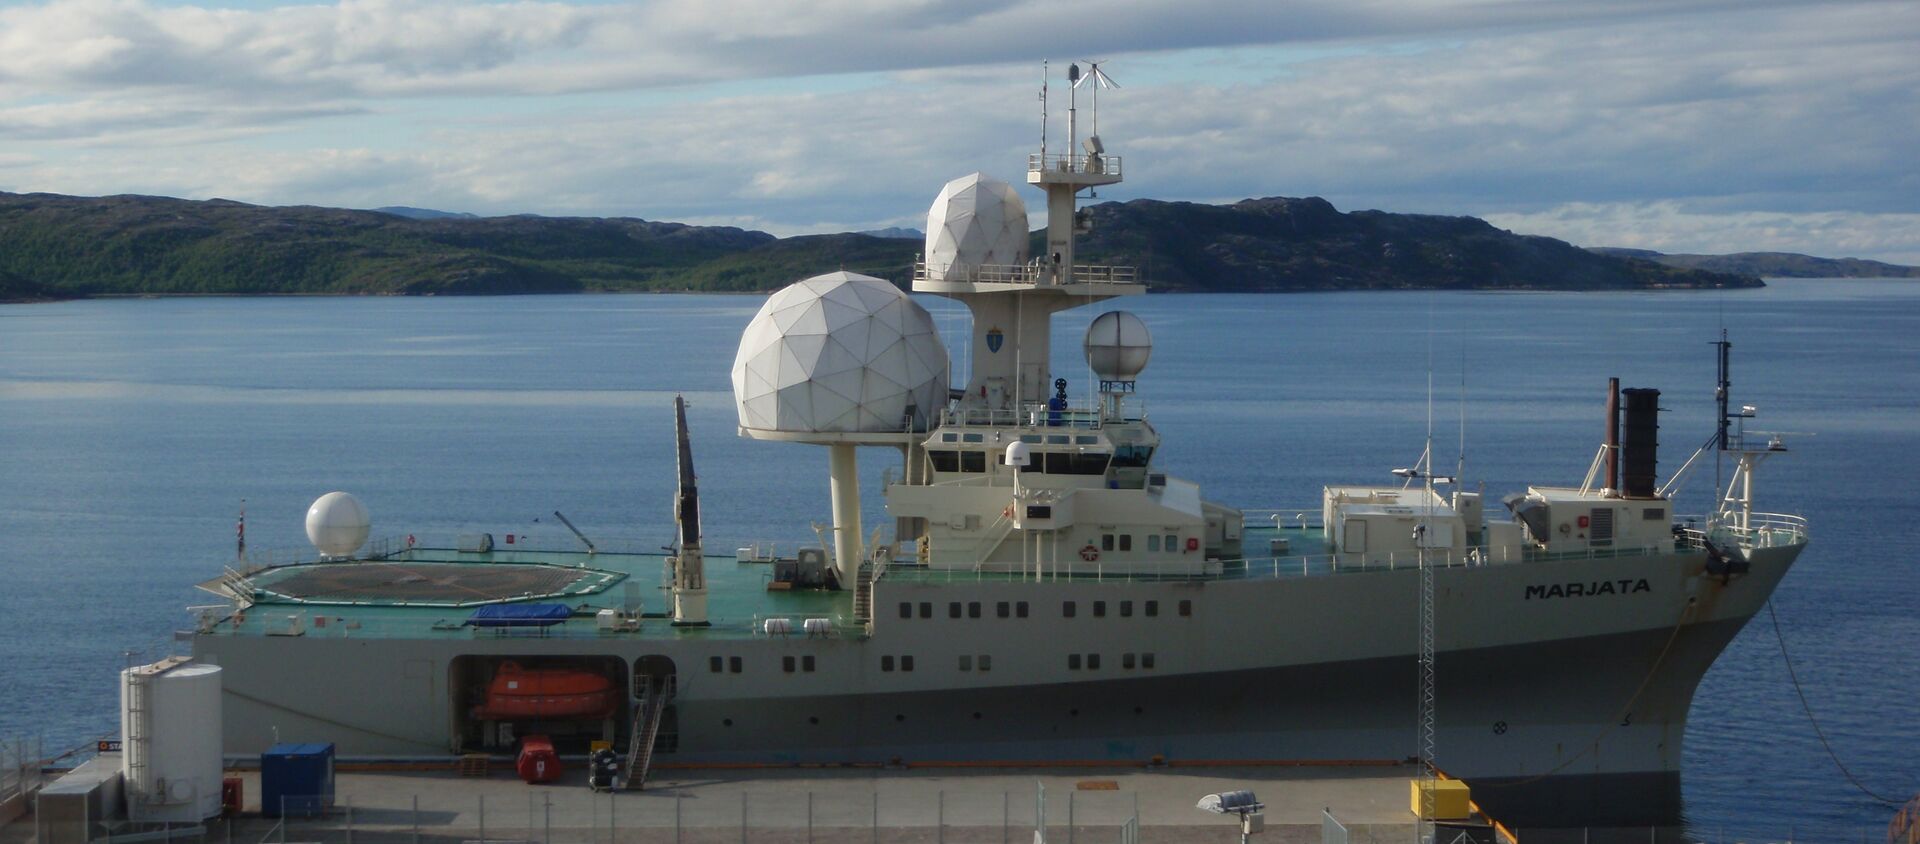 The Norwegian electronic intelligence collection vessel F/S Marjata in Kirkenes, Norway. - Sputnik International, 1920, 04.06.2021